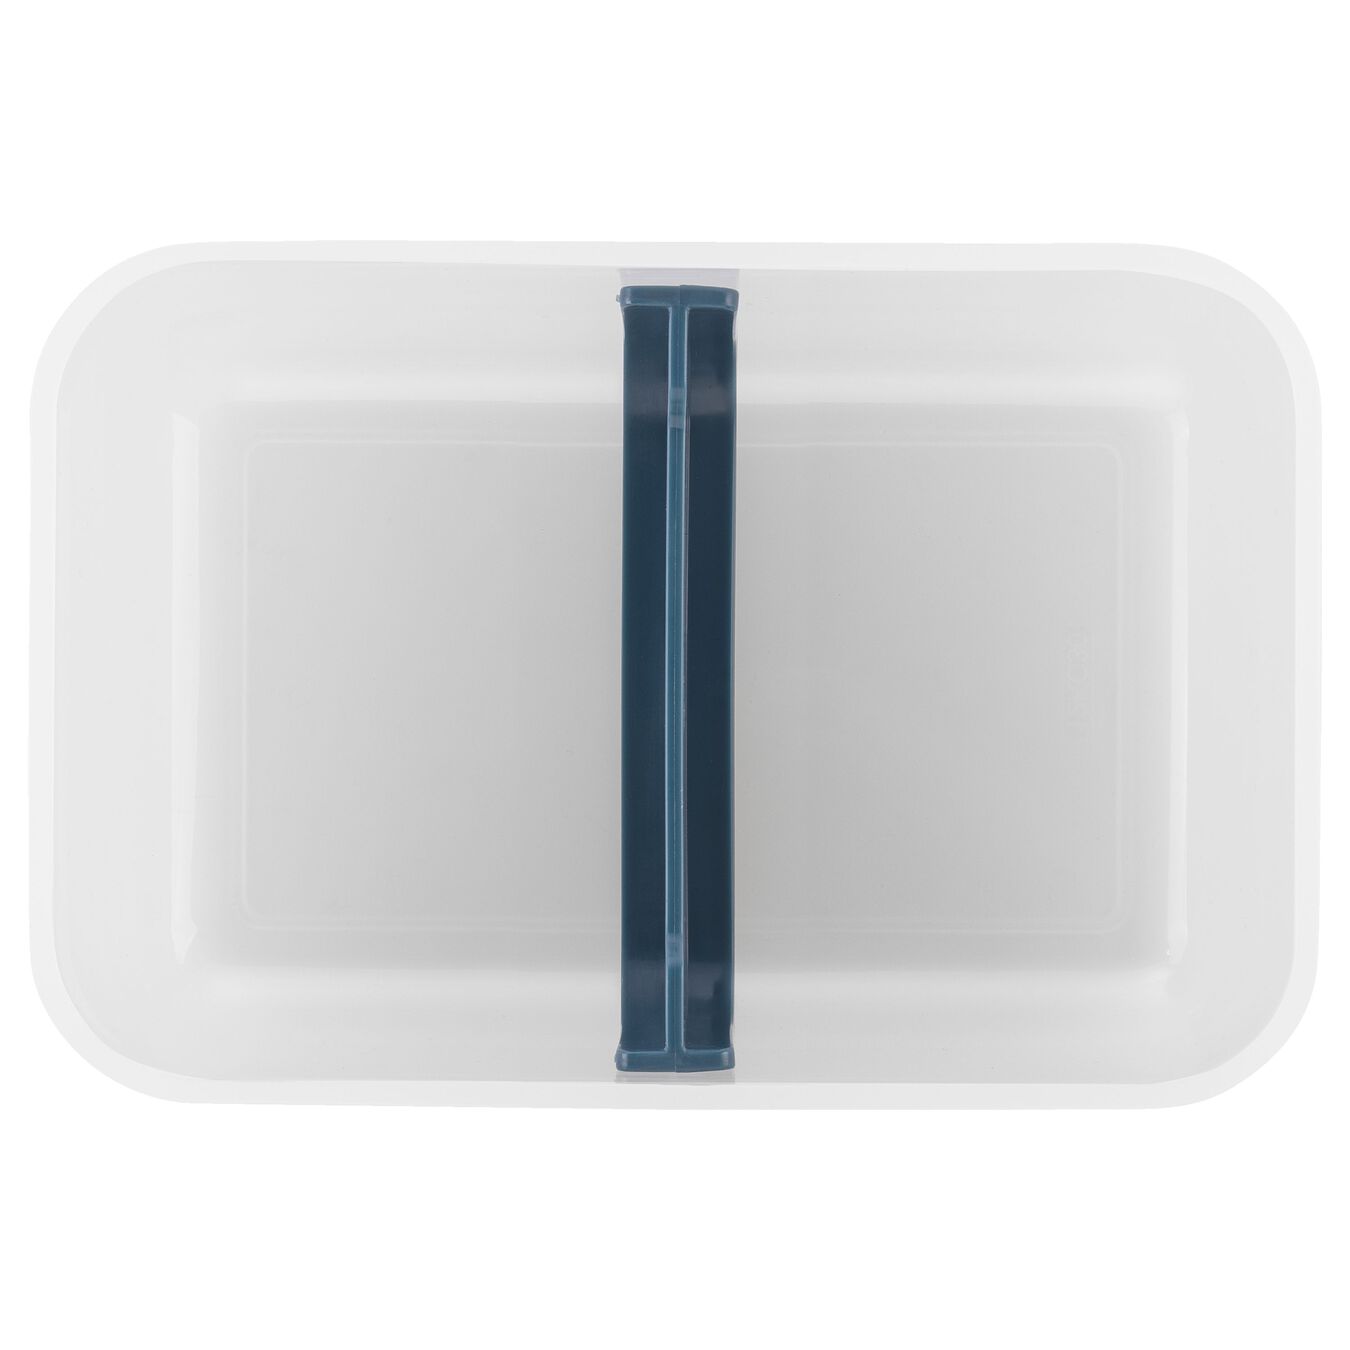 Vakumlu Yemek Taşıma Kabı, L, Plastik, yarı şeffaf-Akdeniz Mavisi,,large 4